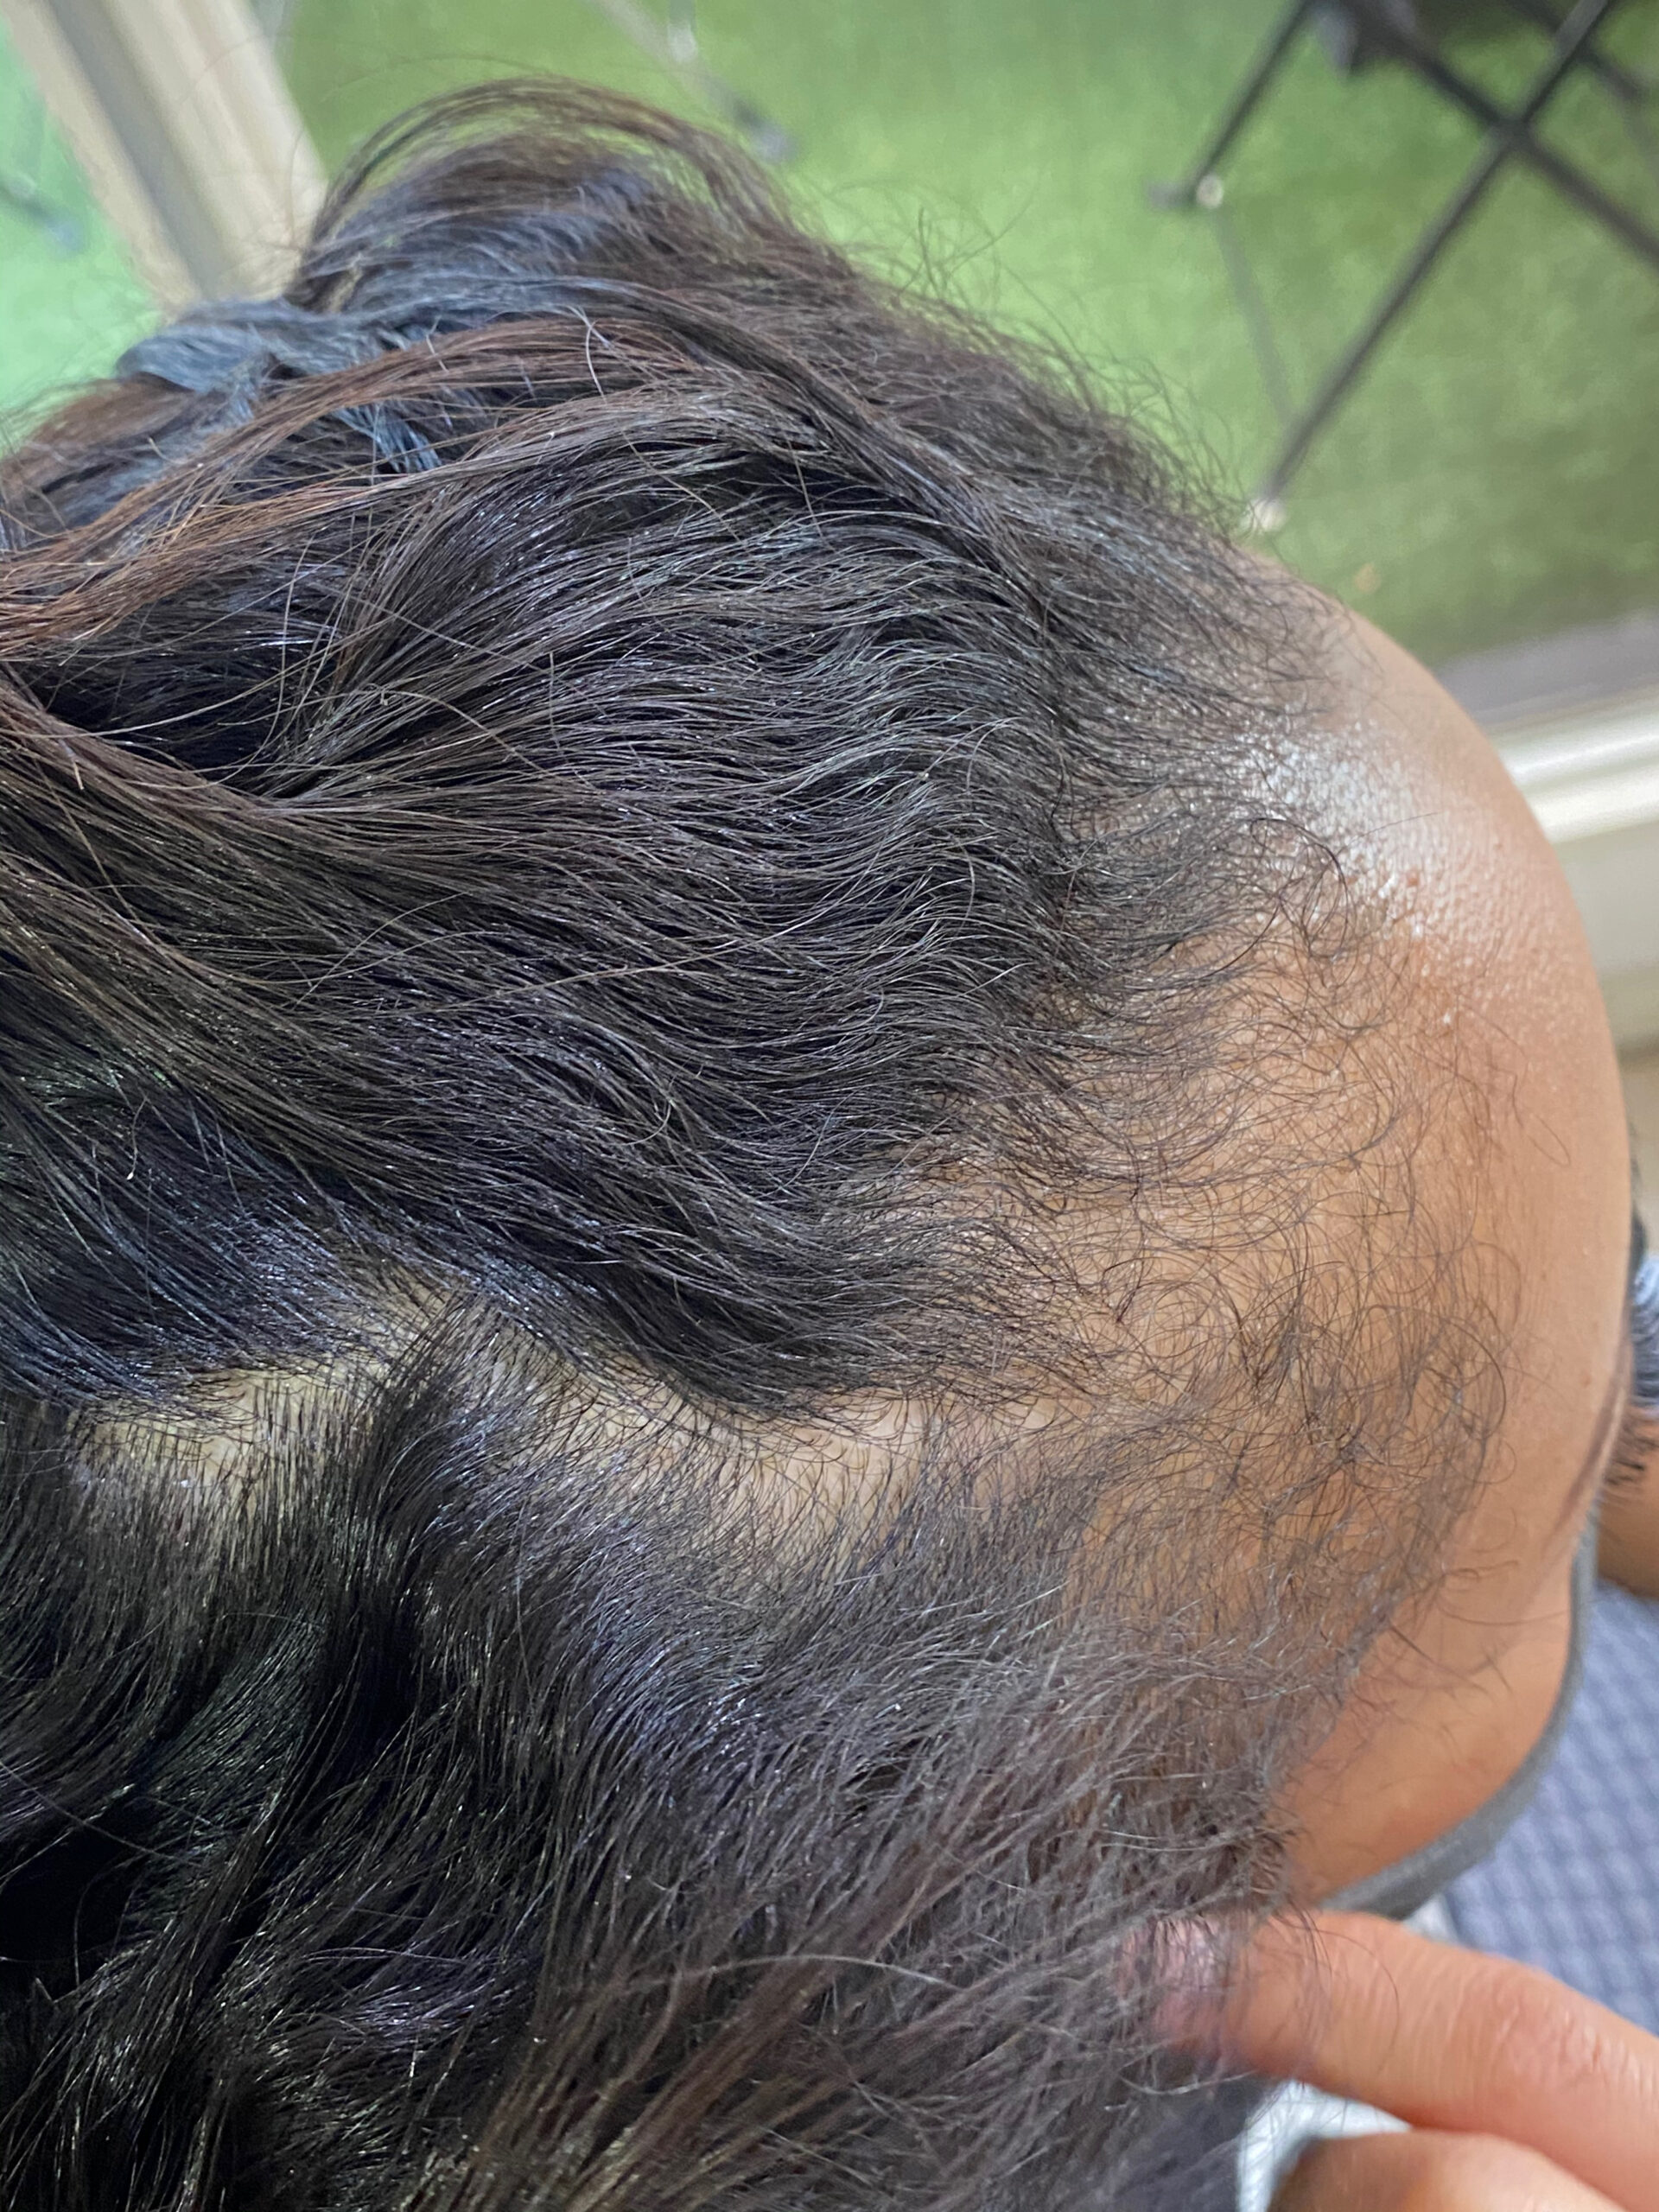 高難易度ジュエリーシステム縮毛矯正【CARELU】で強いくせ毛が気になる方を艶髪ストレートヘア。